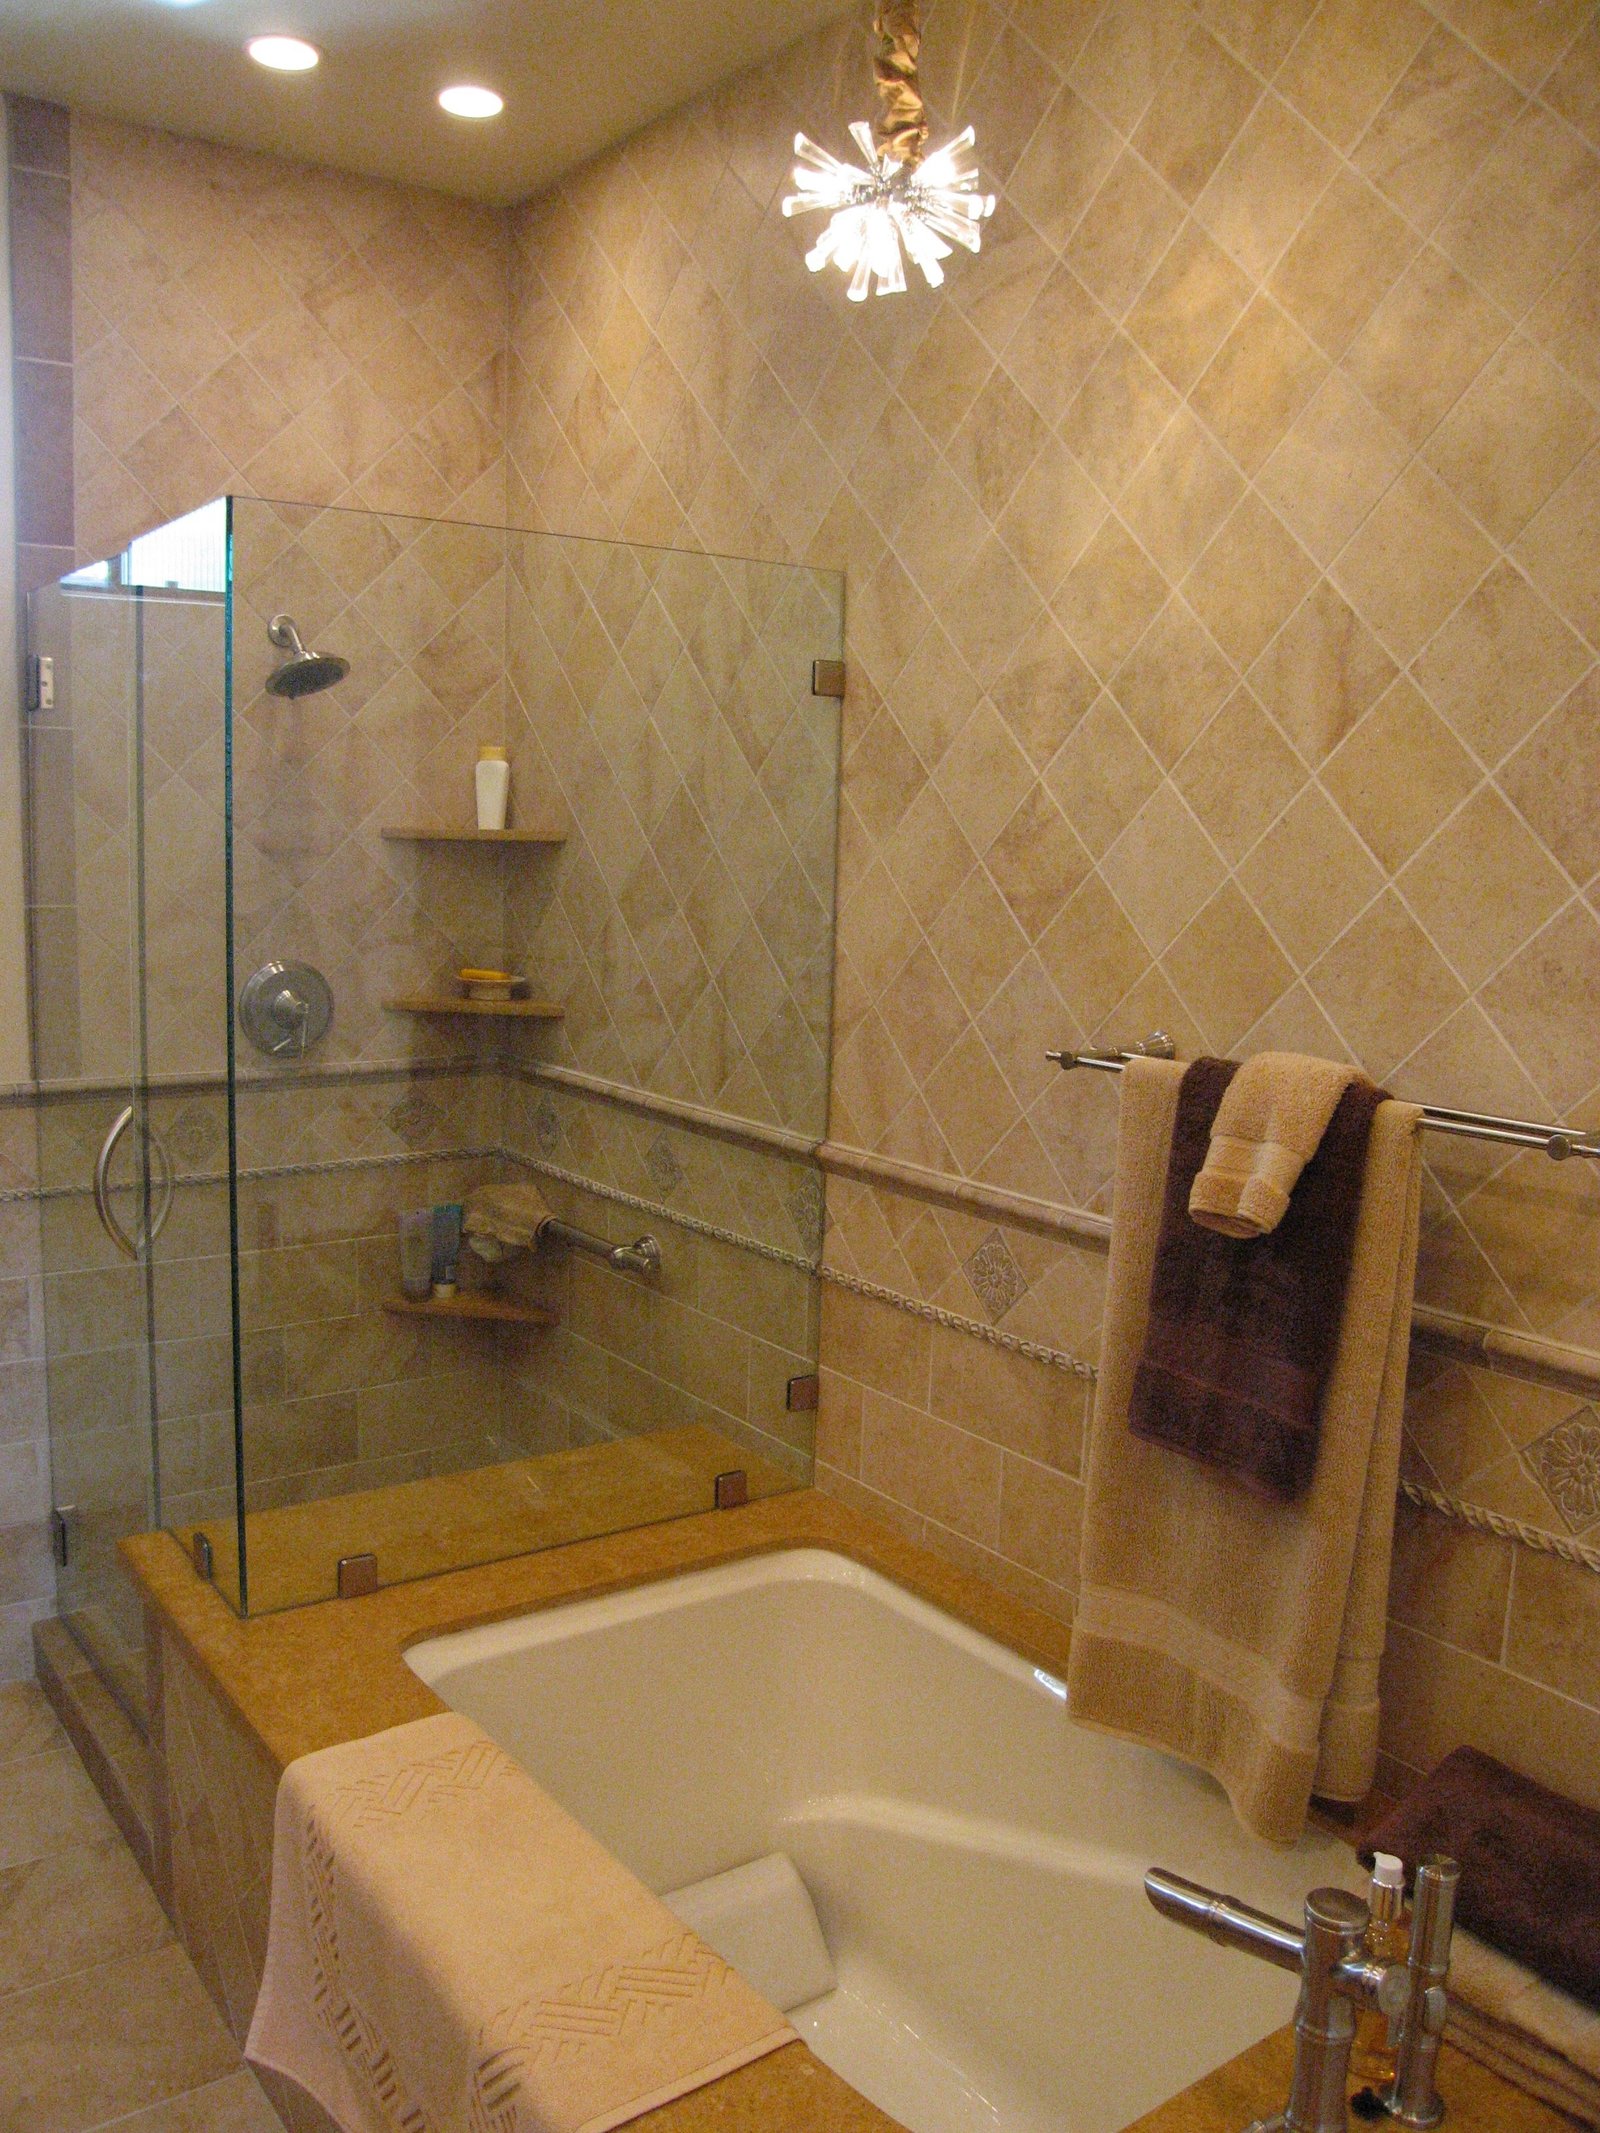 Condo Remodel Master Bath 2